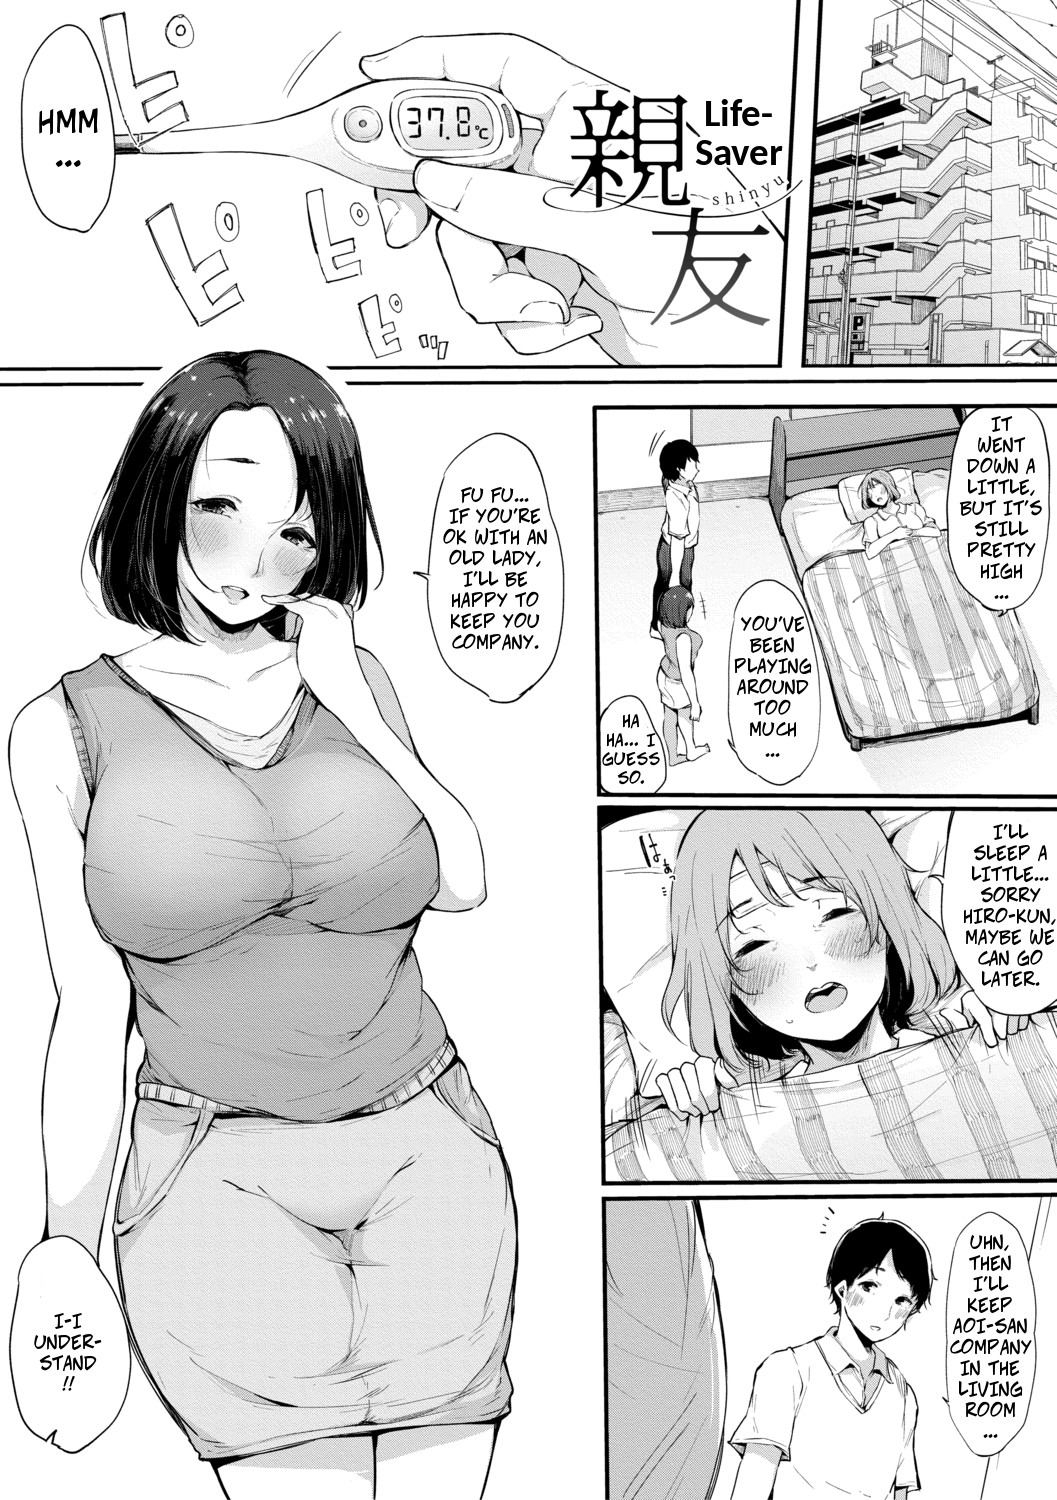 Hentai Manga Comic-Life-Saver-Read-1